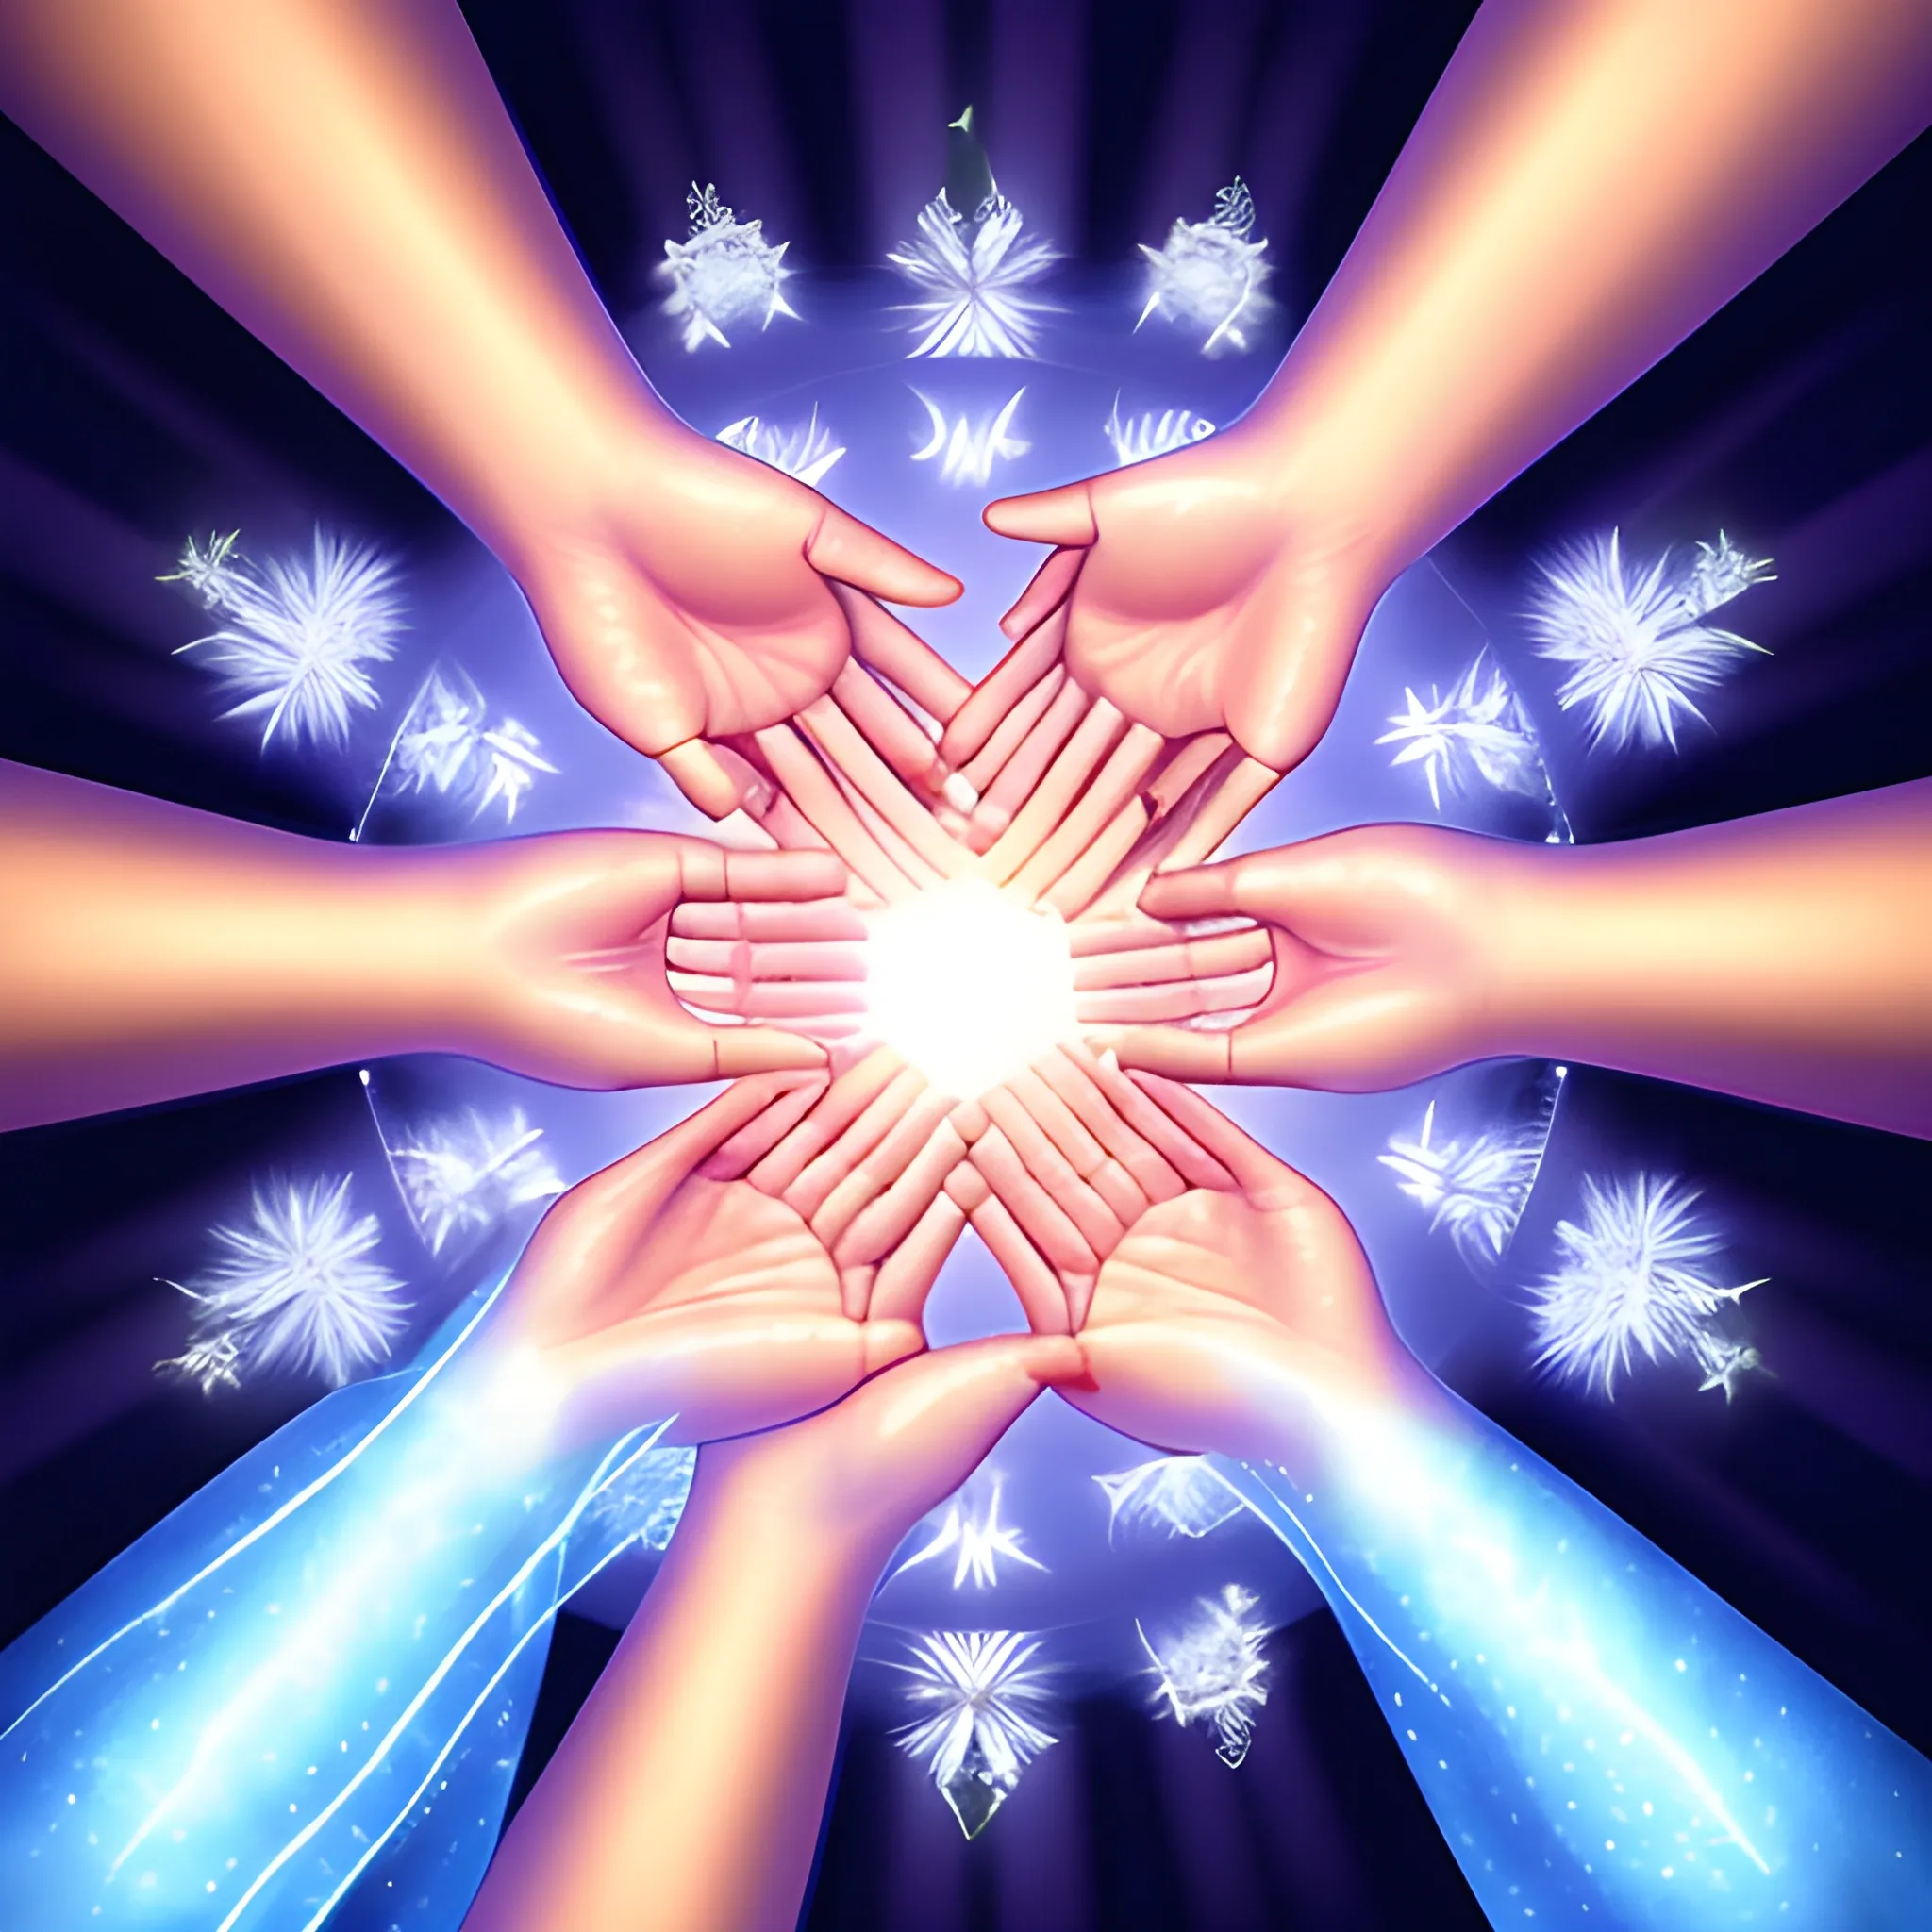 healing hands, shining hands, healing magic